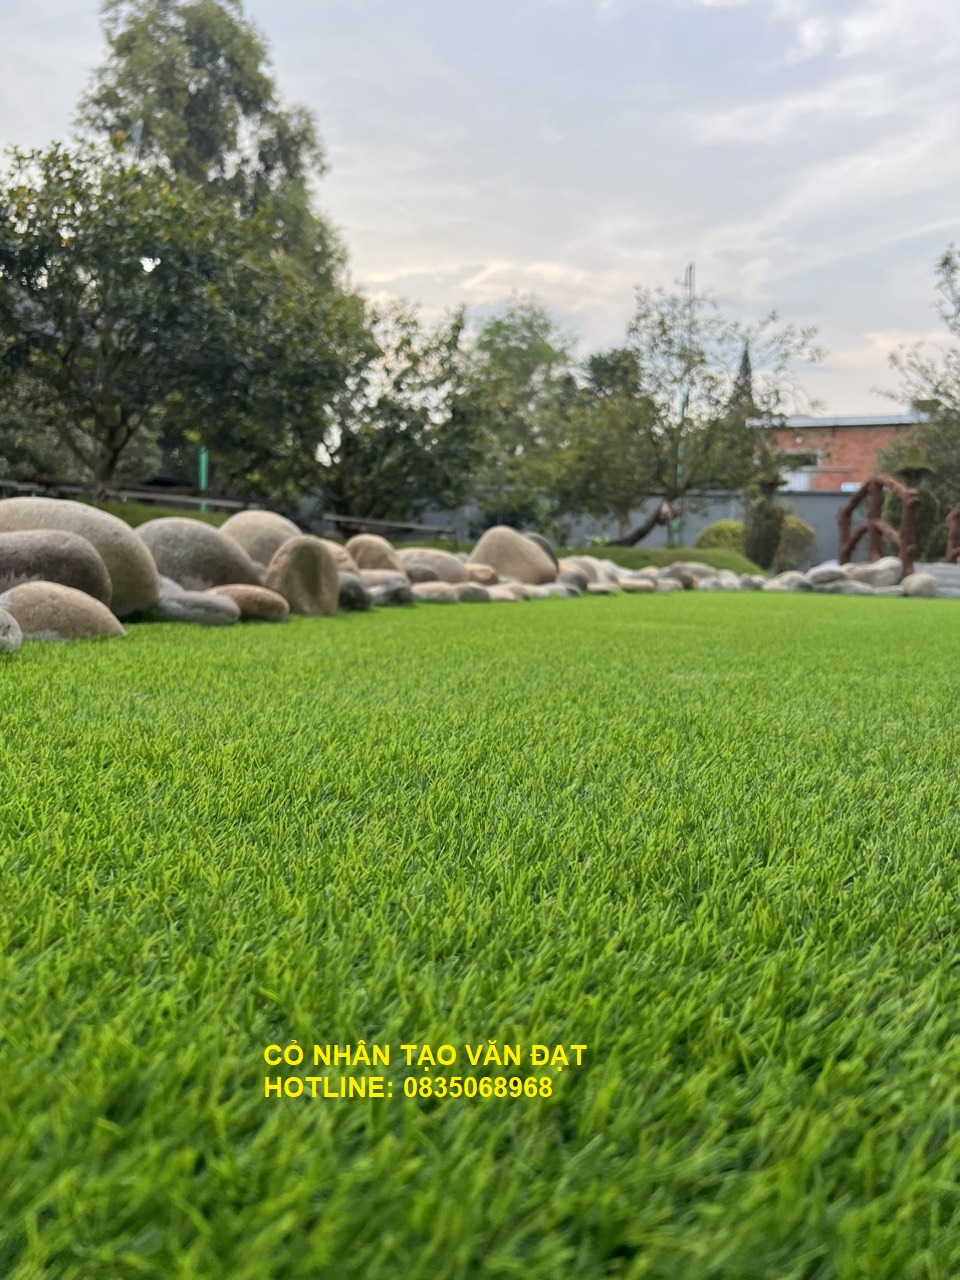 Văn Đạt cung cấp cỏ nhân tạo ở Nha Trang chất lượng